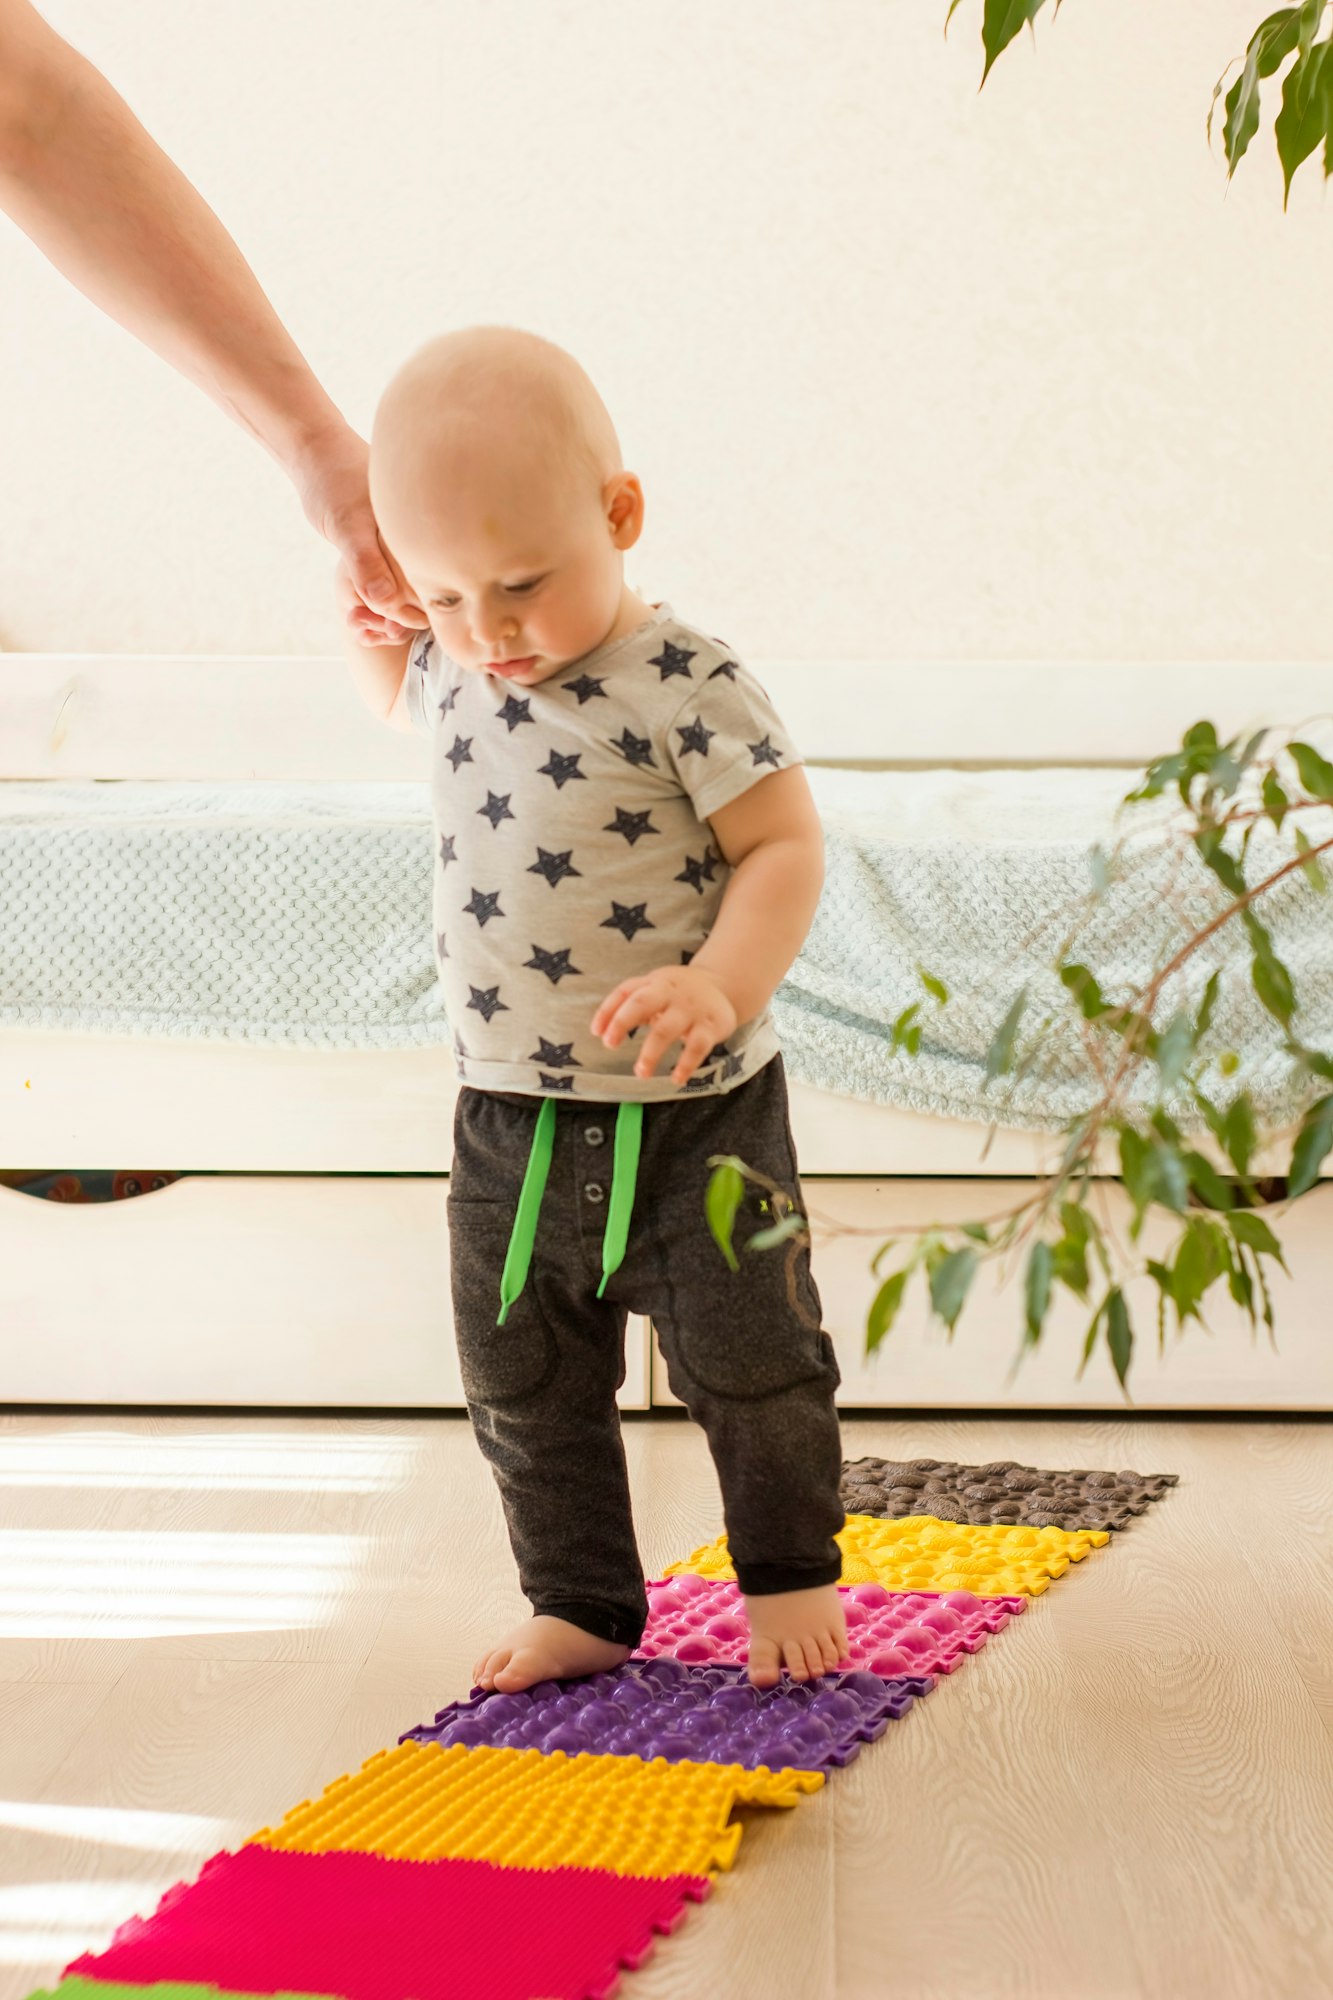 Toddler walks on orthopedic massage mat. Baby foot massage. Exercises for legs on carpet.